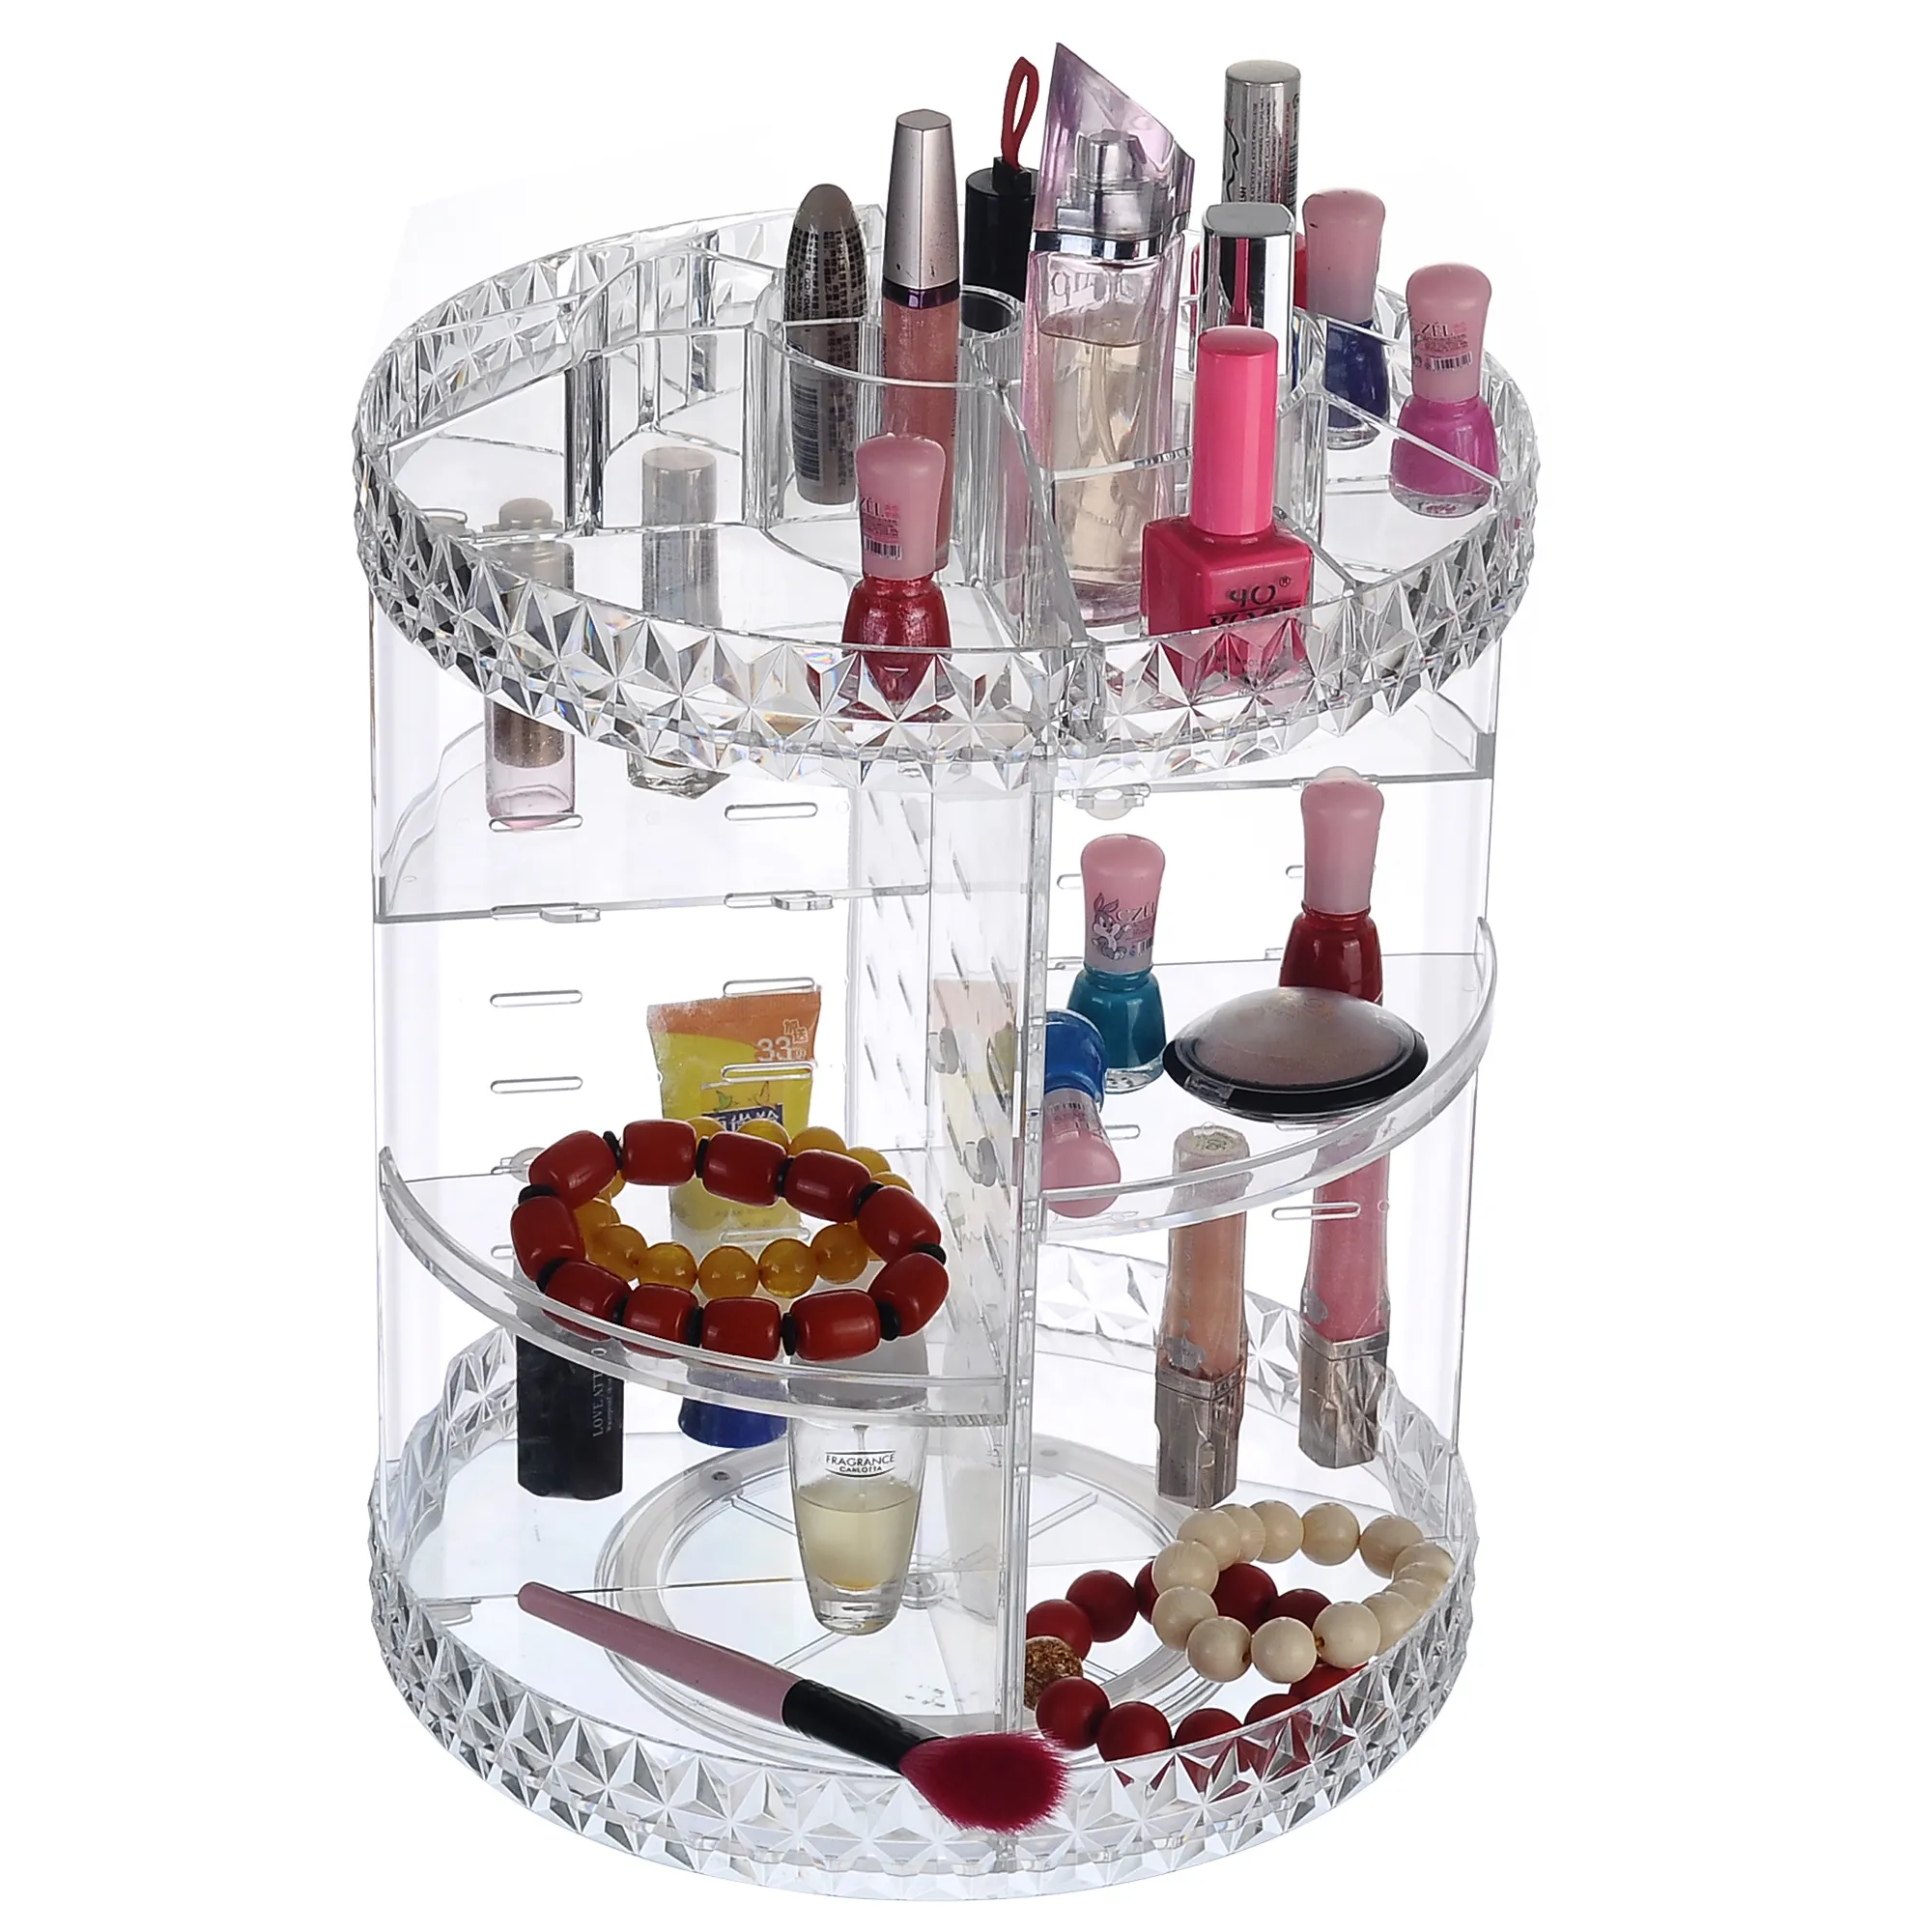 Caixa de acrílico para maquiagem, prateleira organizadora 360 graus para banheiro e cosméticos em acrílico